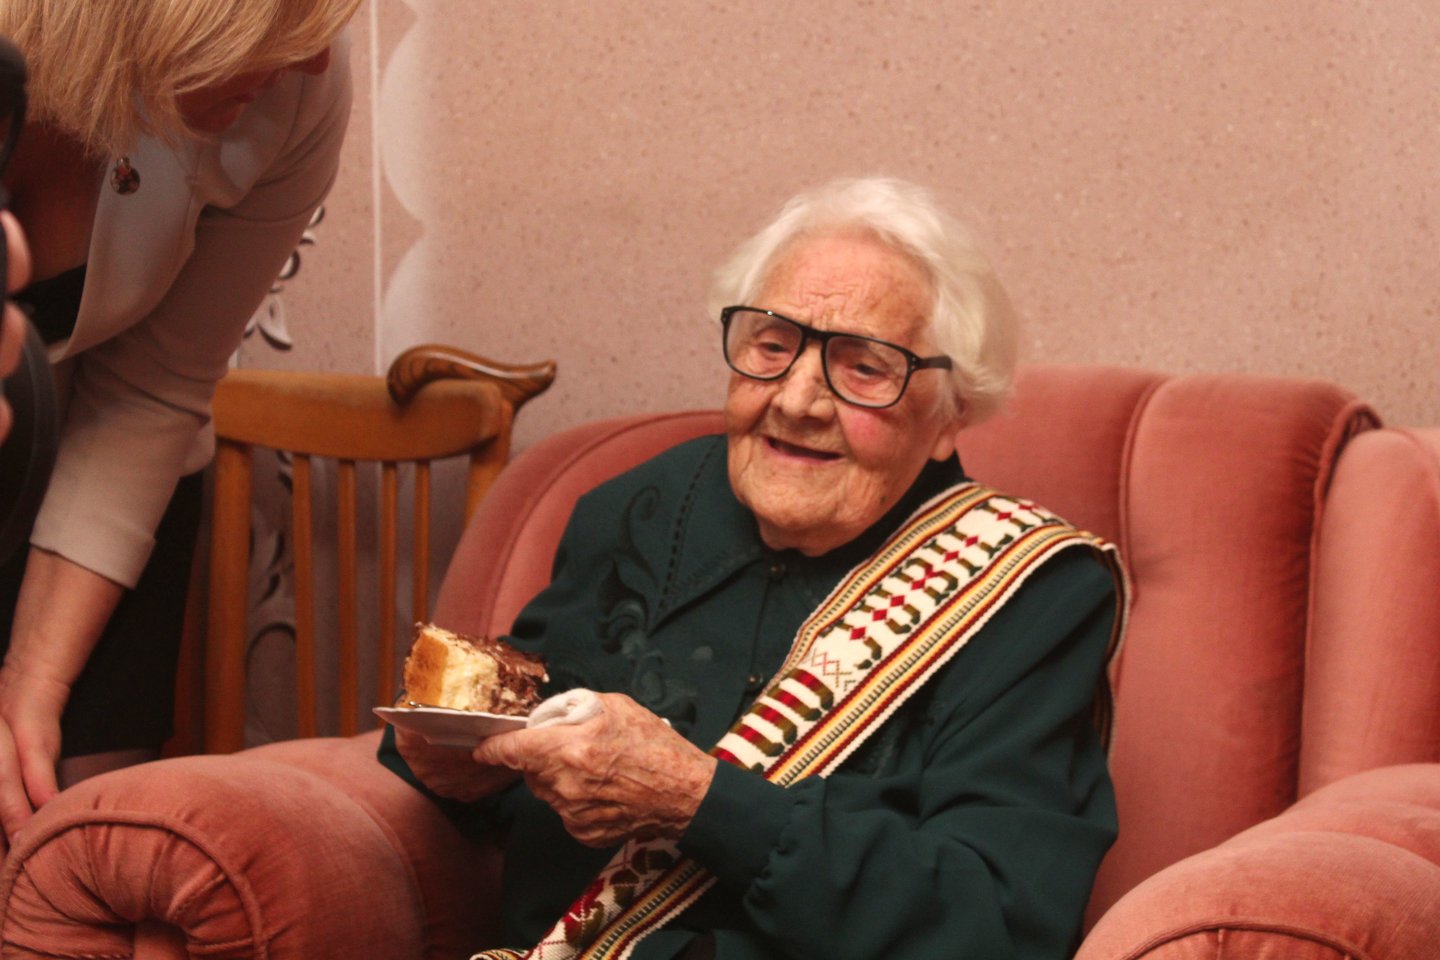  Šimto metų jubiliejų švenčianti J.Vitkauskienė svečius stebino savo energija ir optimizmu<br> R.Vitkaus nuotr.